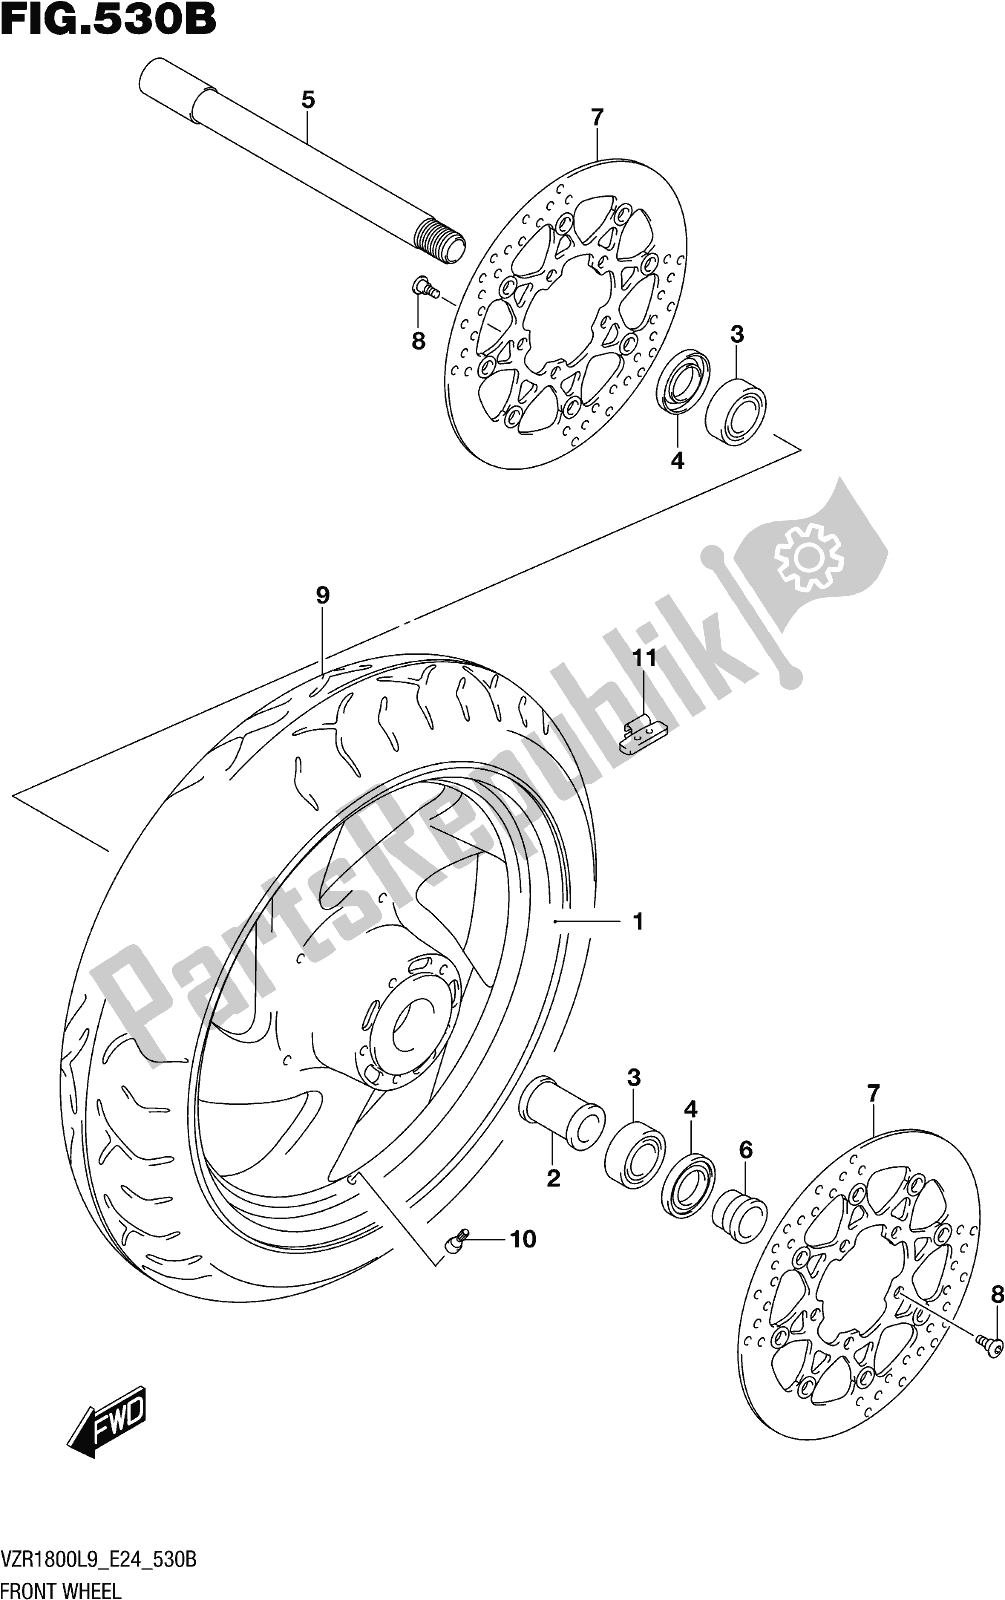 Alle onderdelen voor de Fig. 530b Front Wheel (vzr1800bzl9 E24) van de Suzuki VZR 1800 BZ 2019